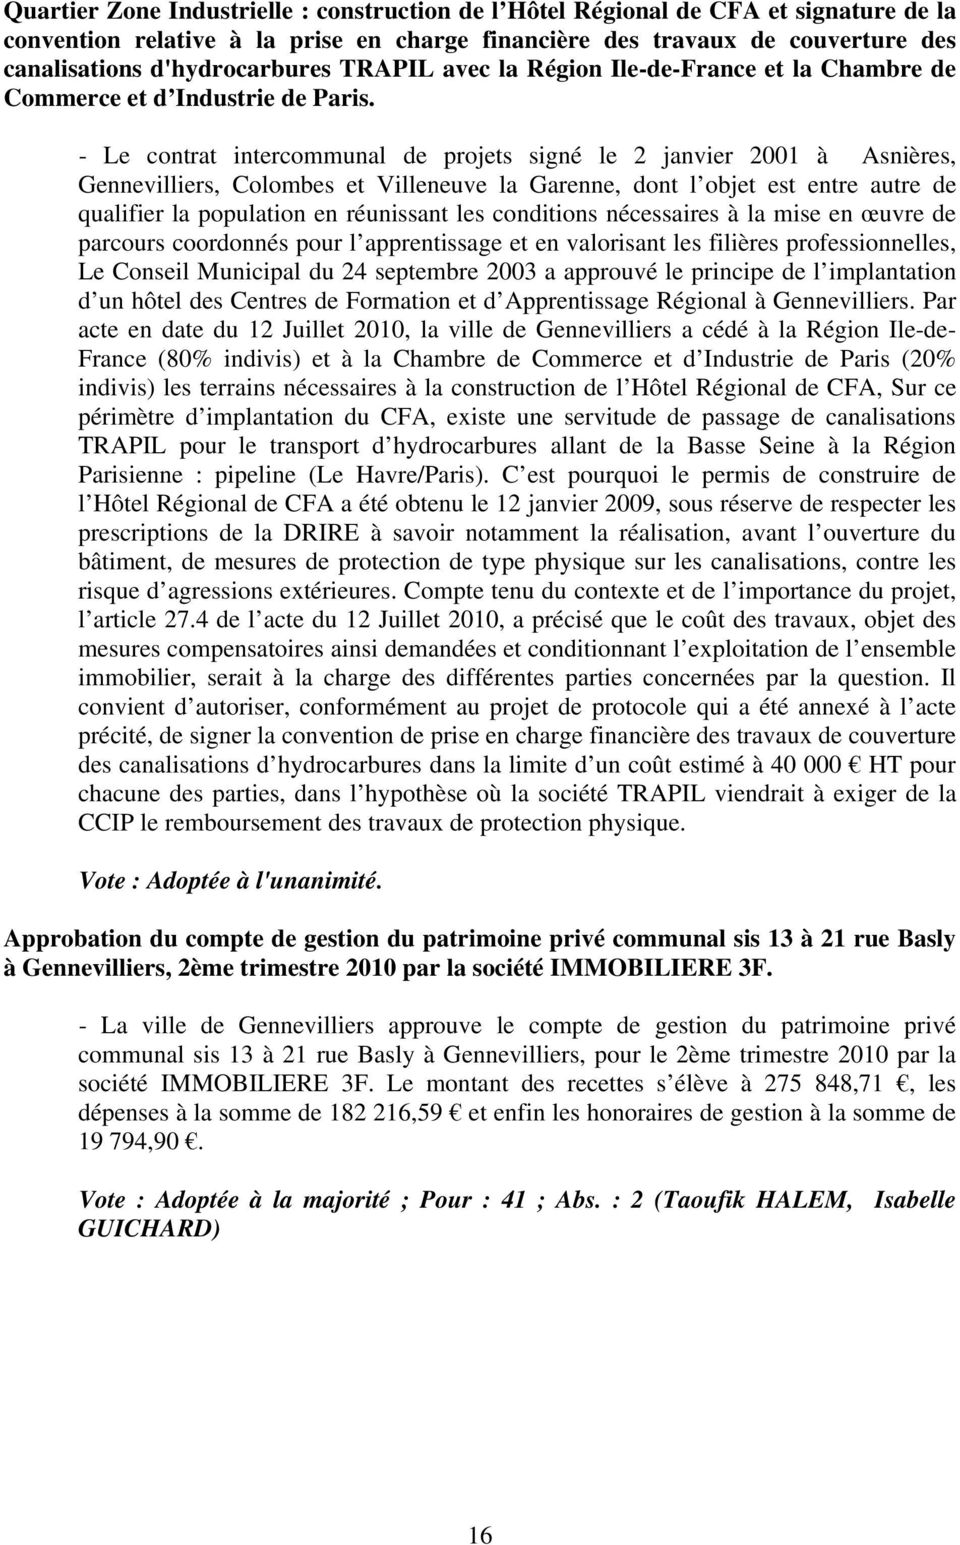 - Le contrat intercommunal de projets signé le 2 janvier 2001 à Asnières, Gennevilliers, Colombes et Villeneuve la Garenne, dont l objet est entre autre de qualifier la population en réunissant les